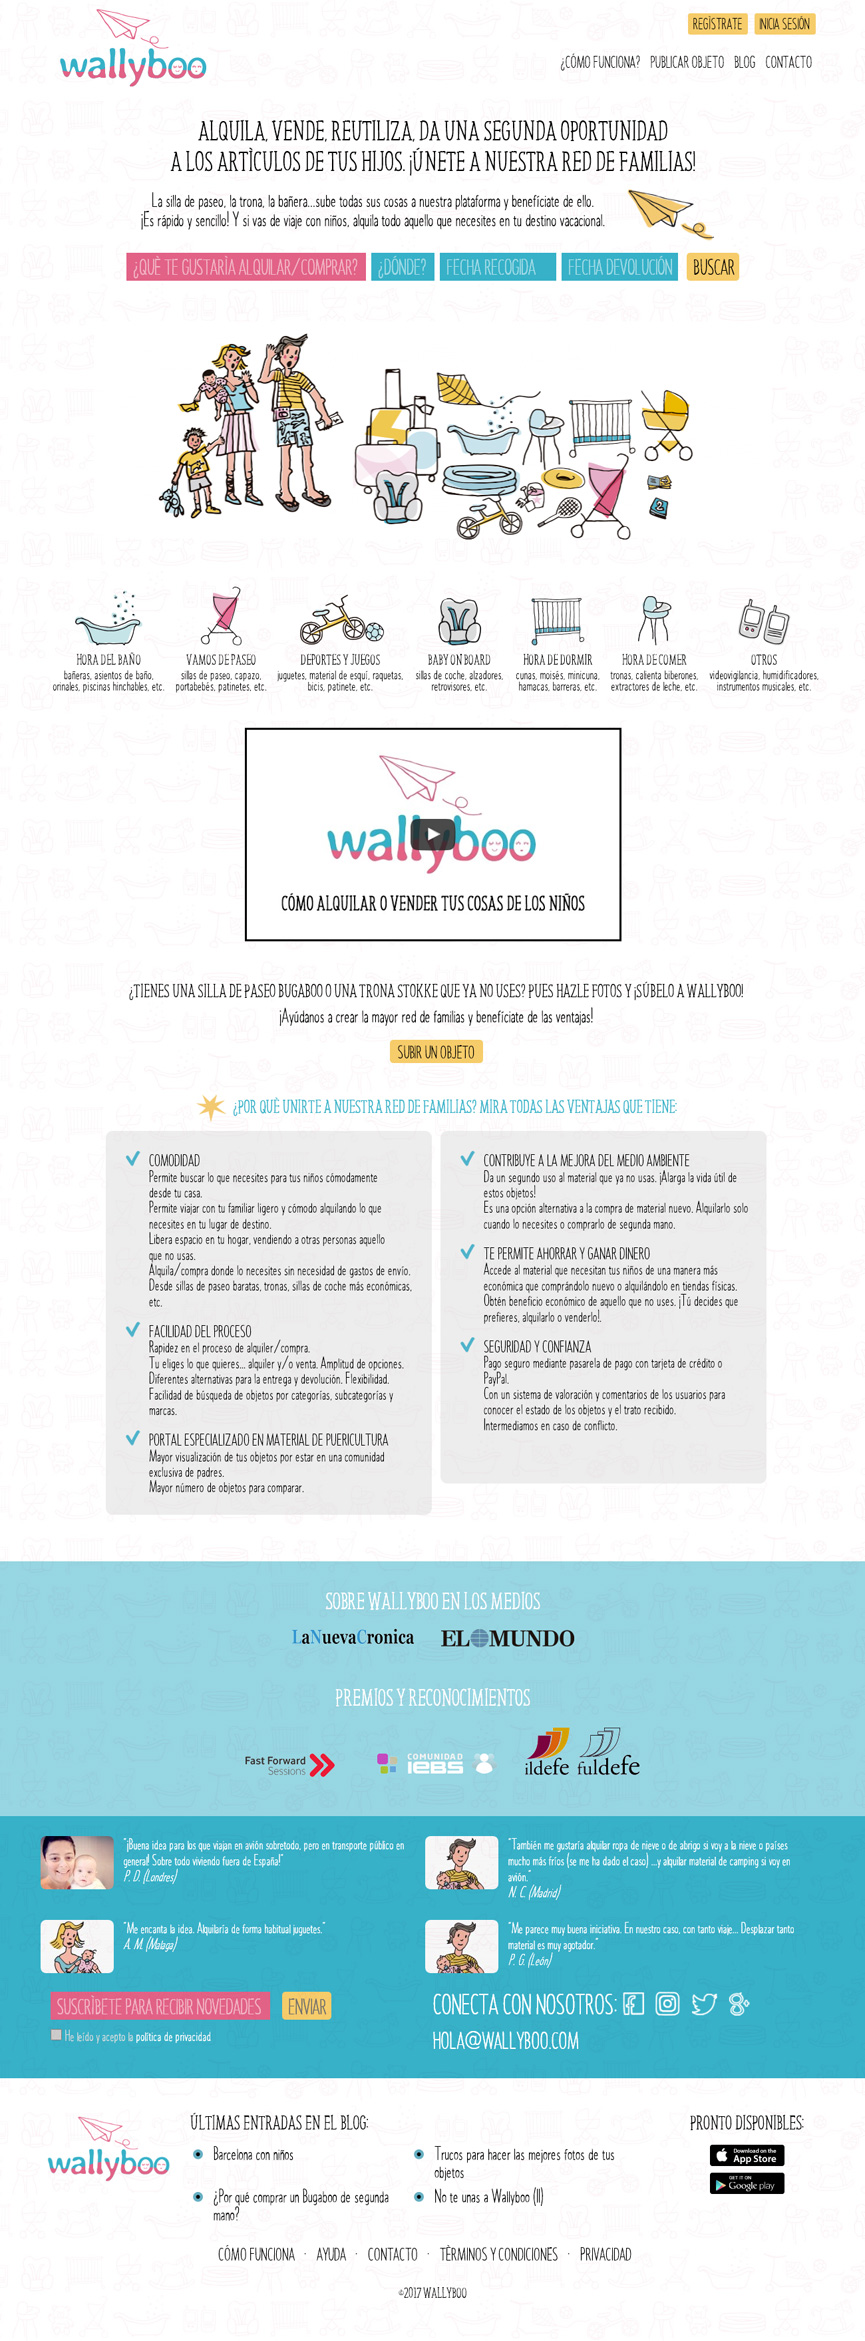 Página princial de wallyboo. Plataforma para el alquiler y venta de objetos de segunda mano de niños y bebés